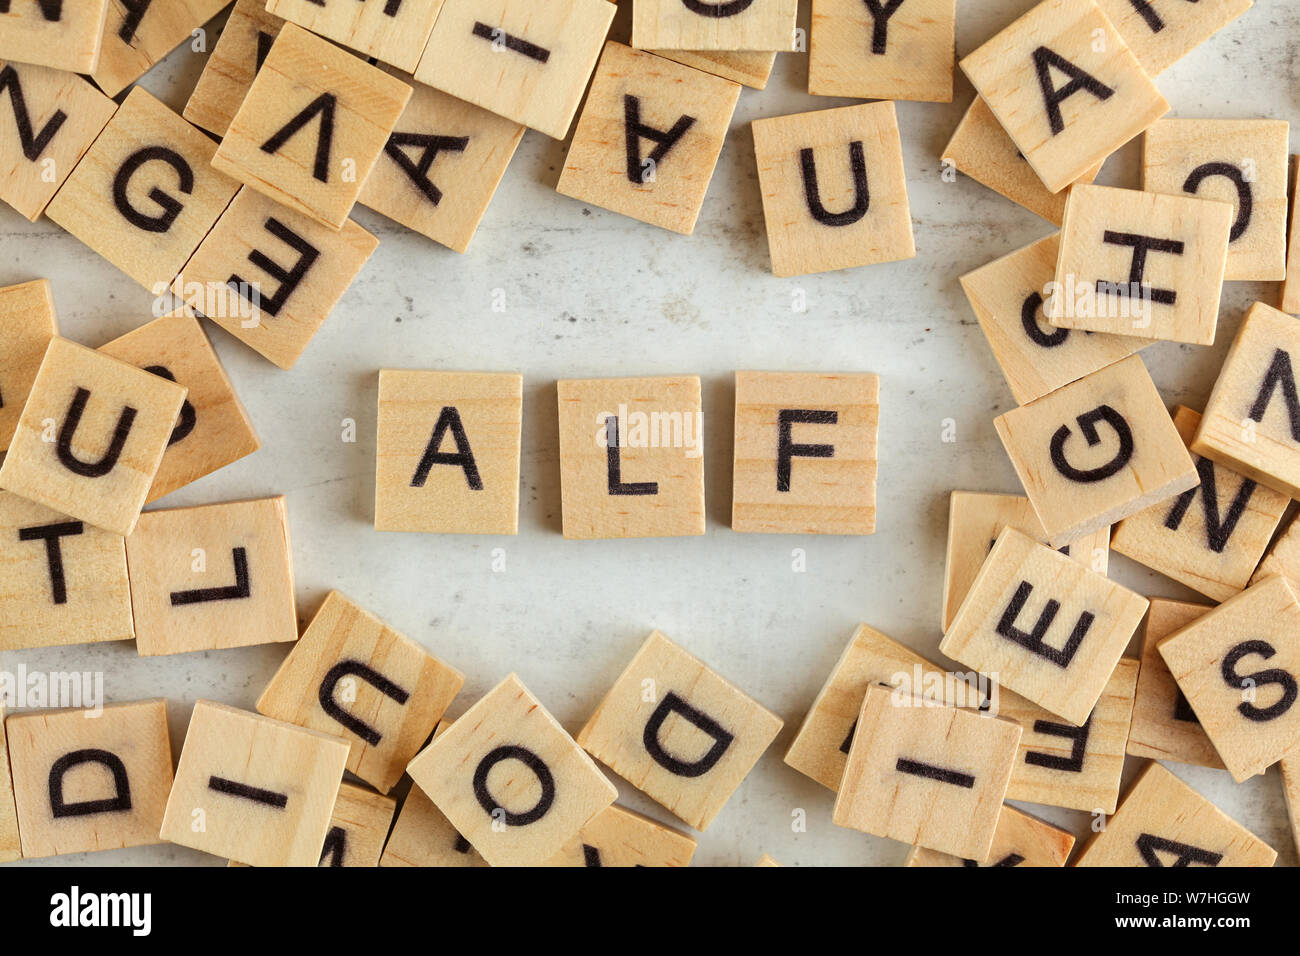 Vue du haut vers le bas, pile de blocs de bois carrés avec des lettres (ALF  est synonyme d'écouter en premier) sur un tableau blanc Photo Stock - Alamy